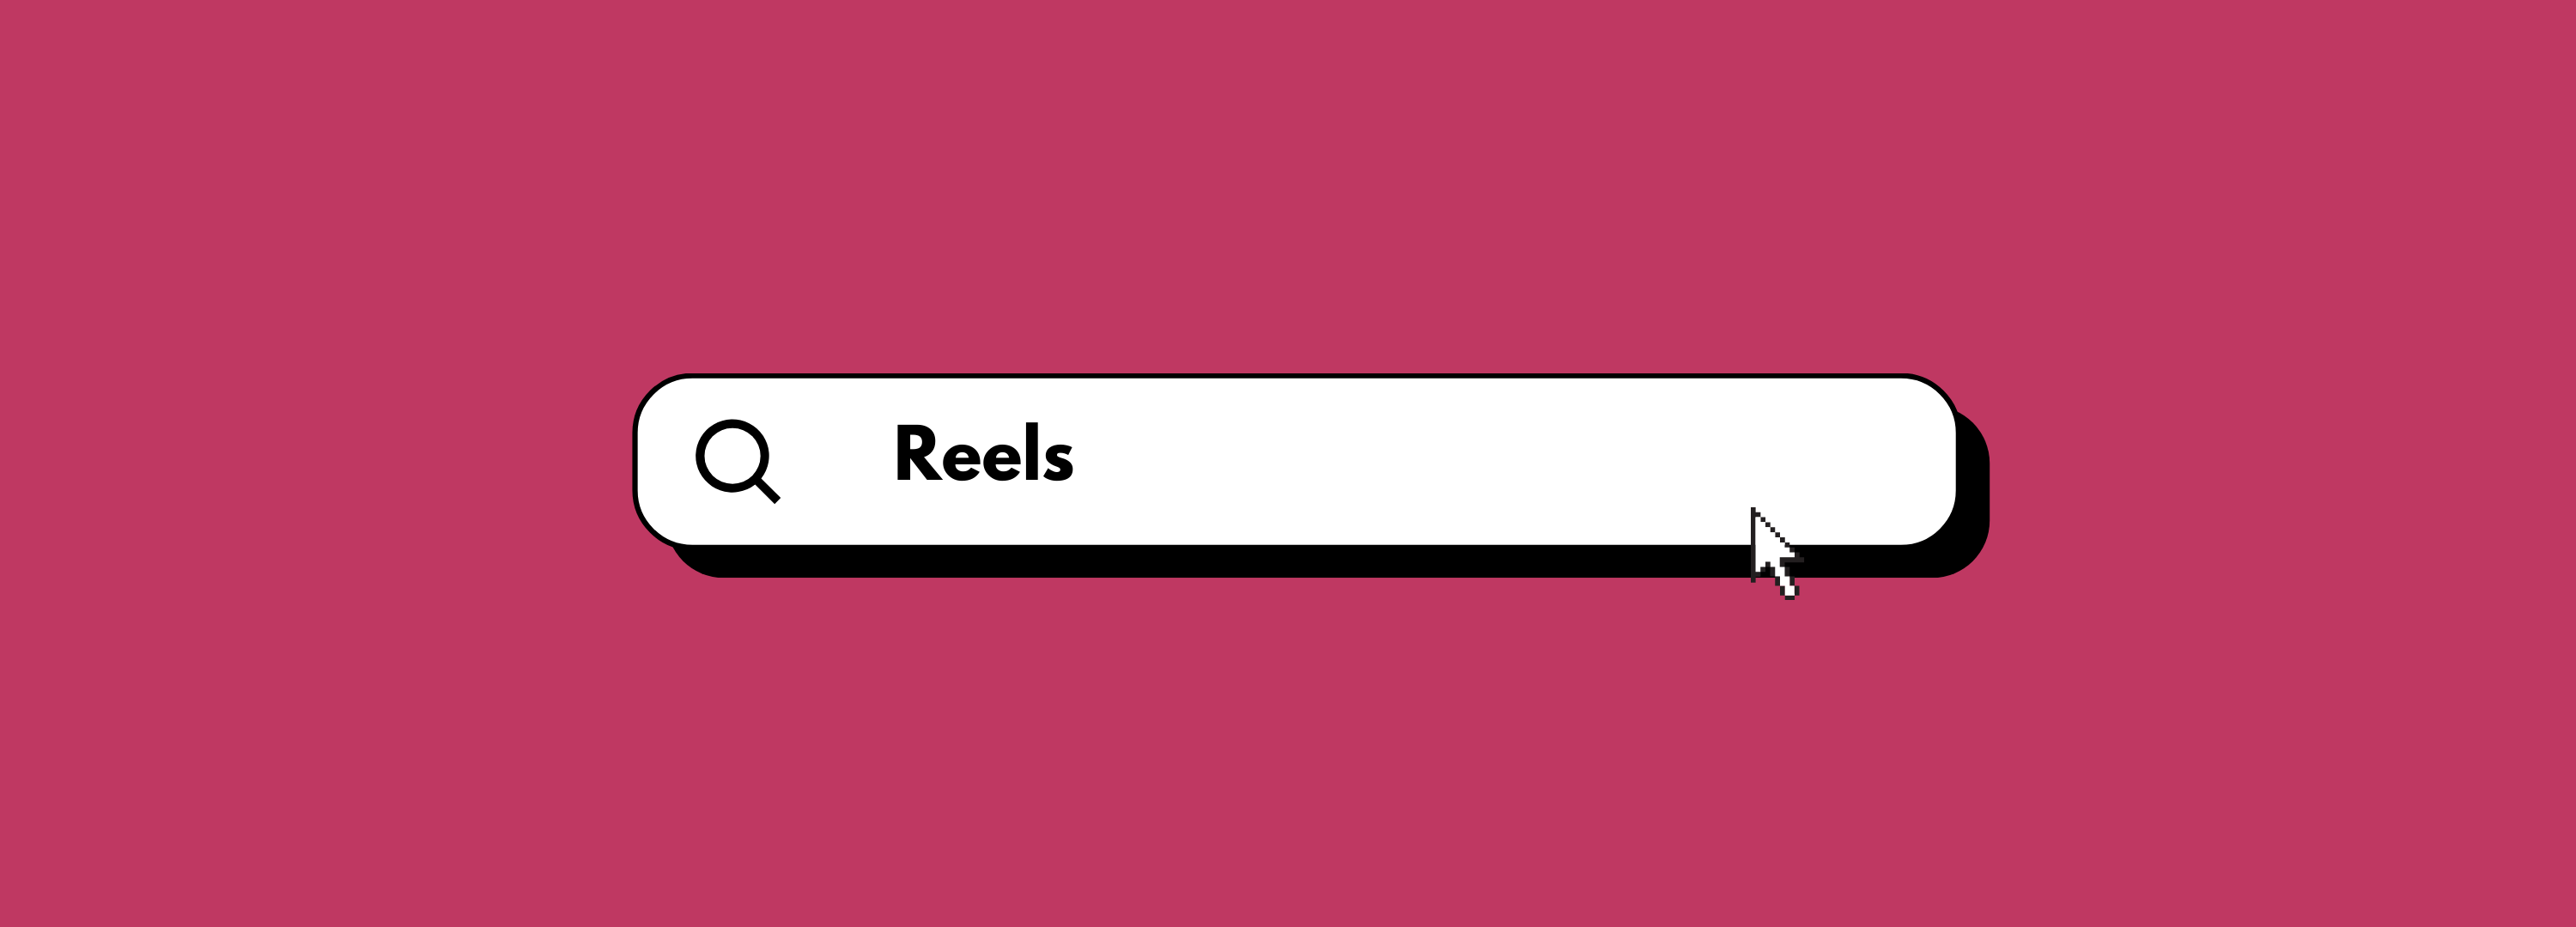 reels